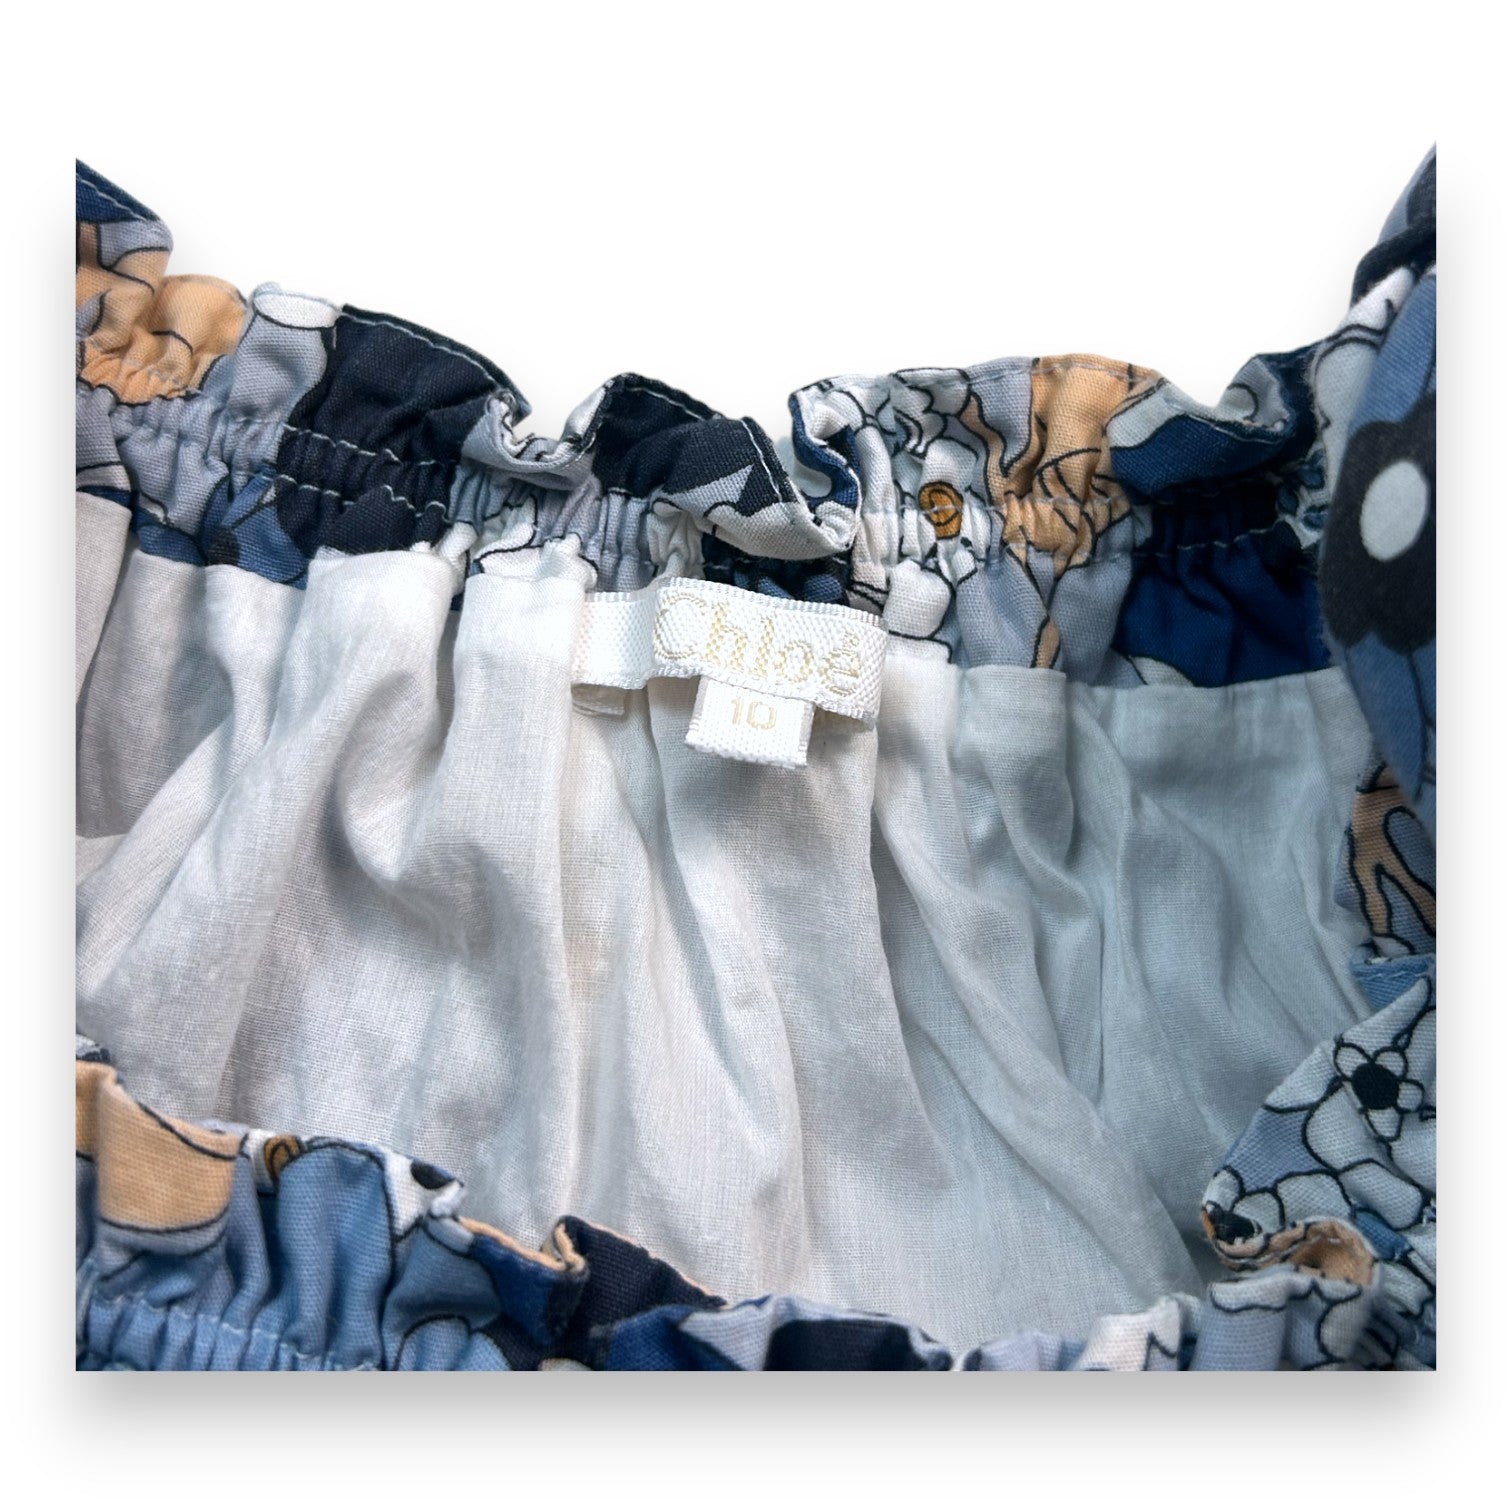 CHLOE - Robe volantée bleue imprimé fleurs - 10 ans